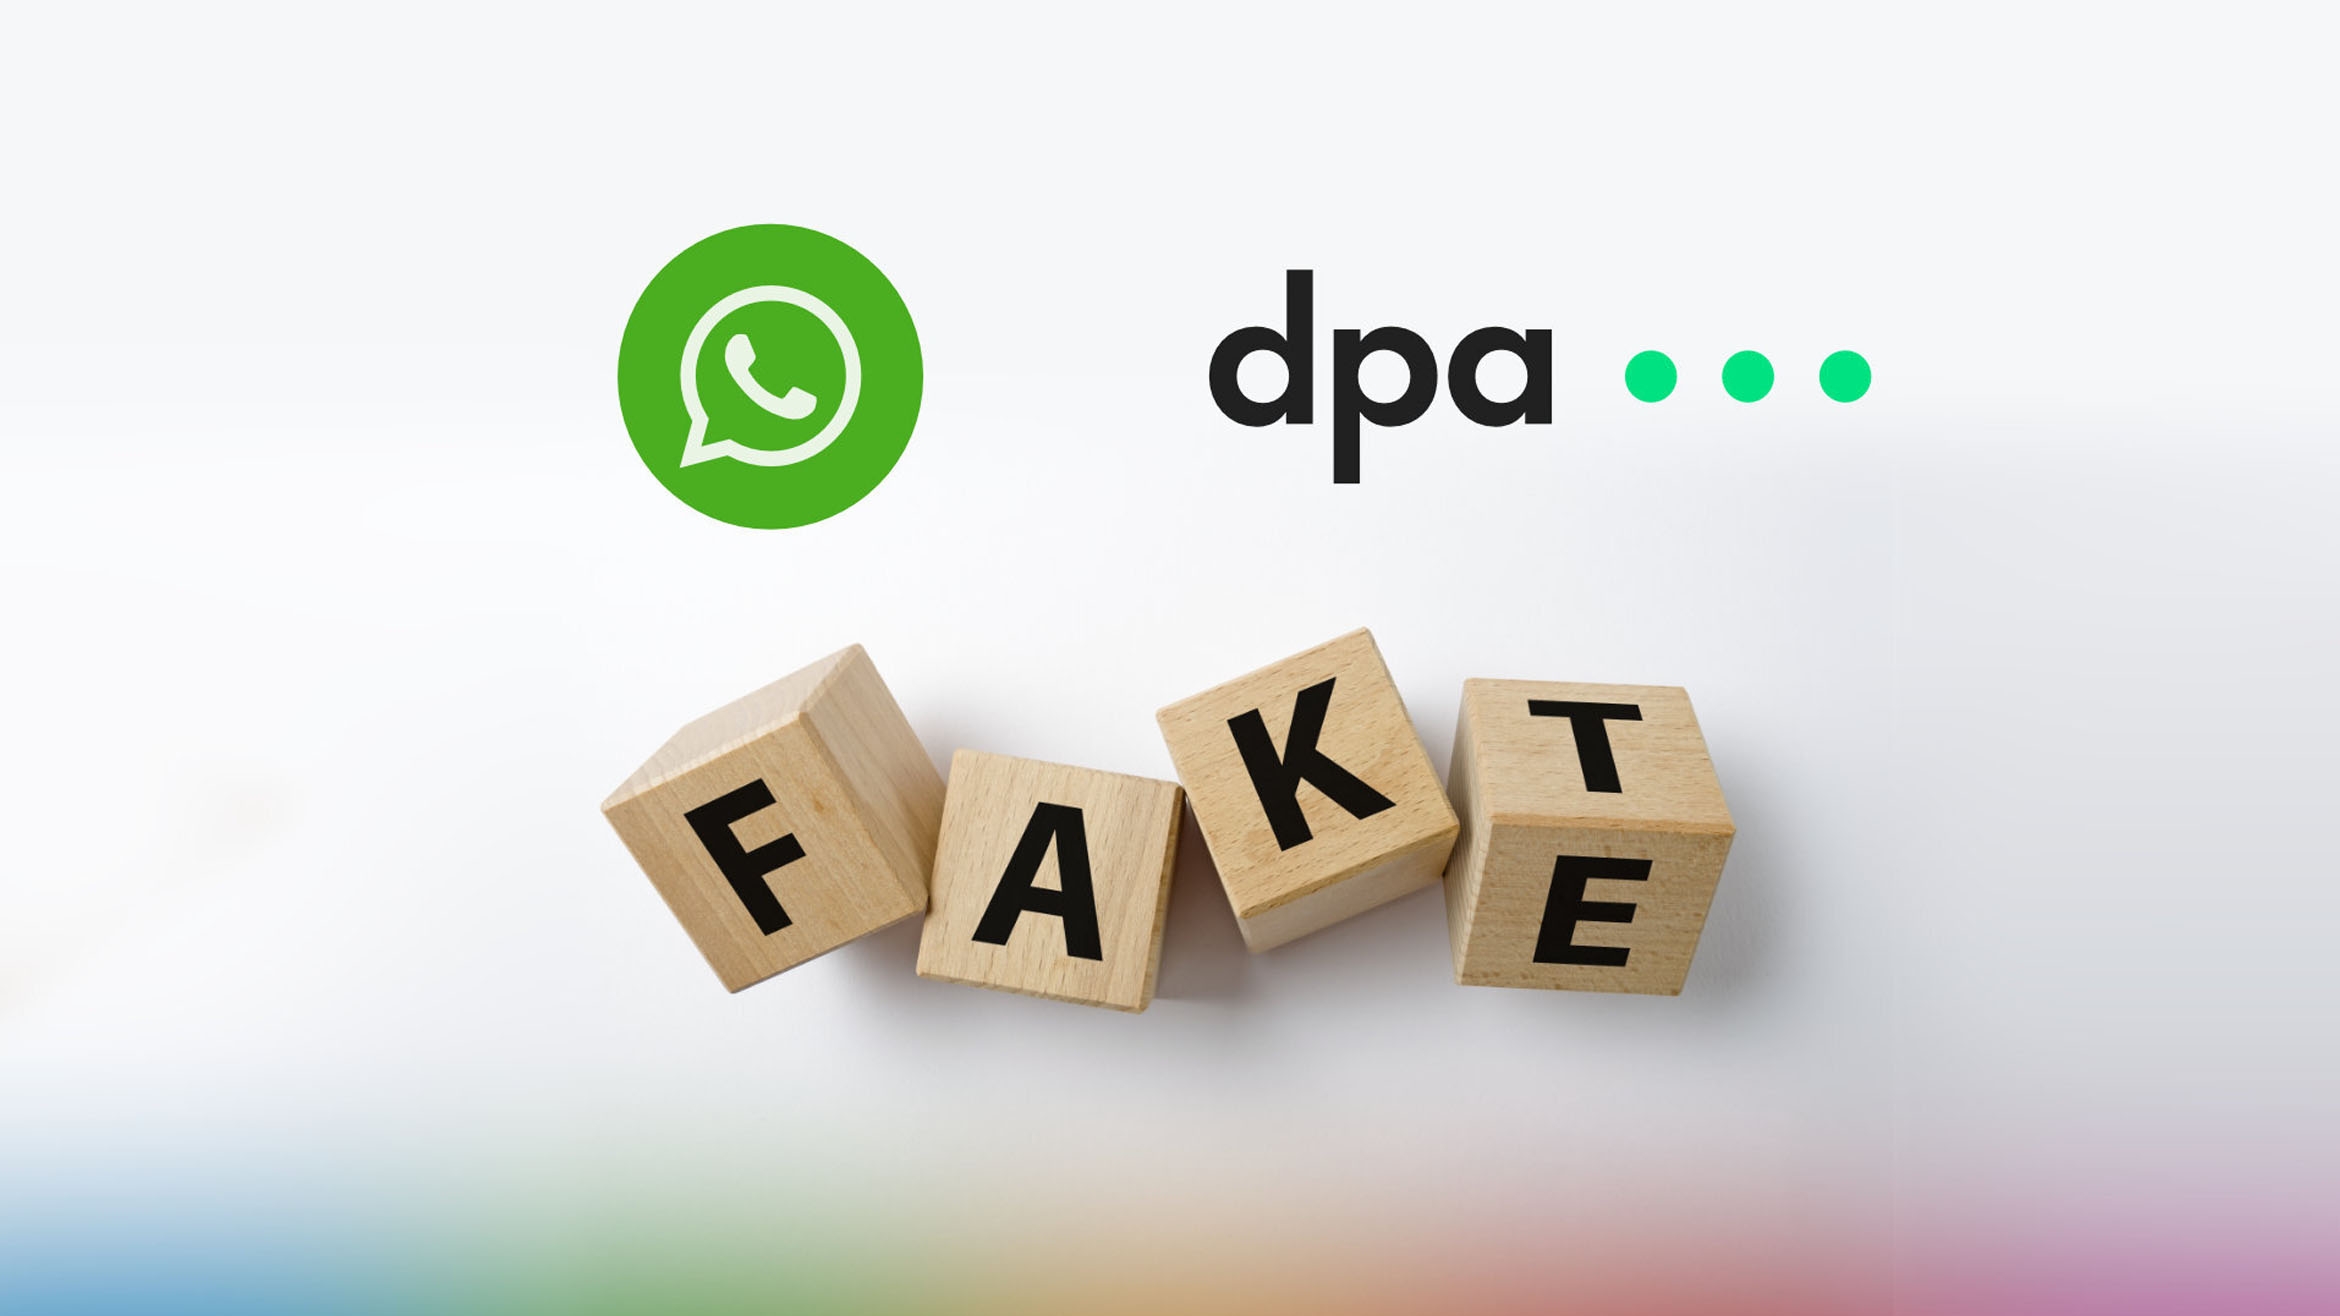 Nach AFP und Correctiv bietet nun auch die dpa an, dass Nutzer von WhatsApp Daten zur Prüfung schicken können